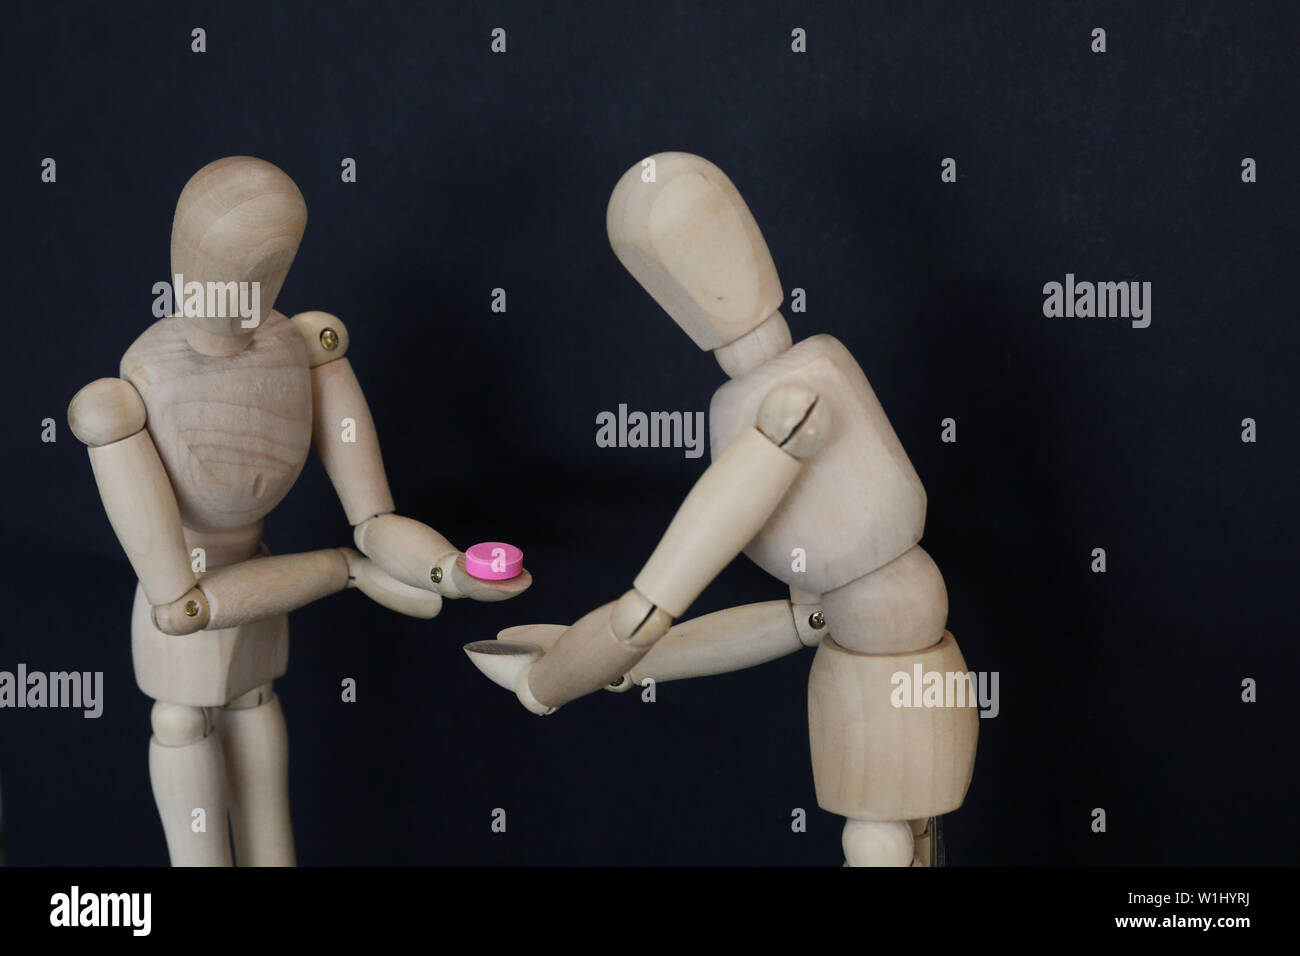 2 Hölzerne Puppen eine Annahme eine rosa Pille Tablette Droge von den Anderen. Illegale Medikamente, die Wahl der Entscheidung Konzept. Ausbildung Droge awa Stockfoto